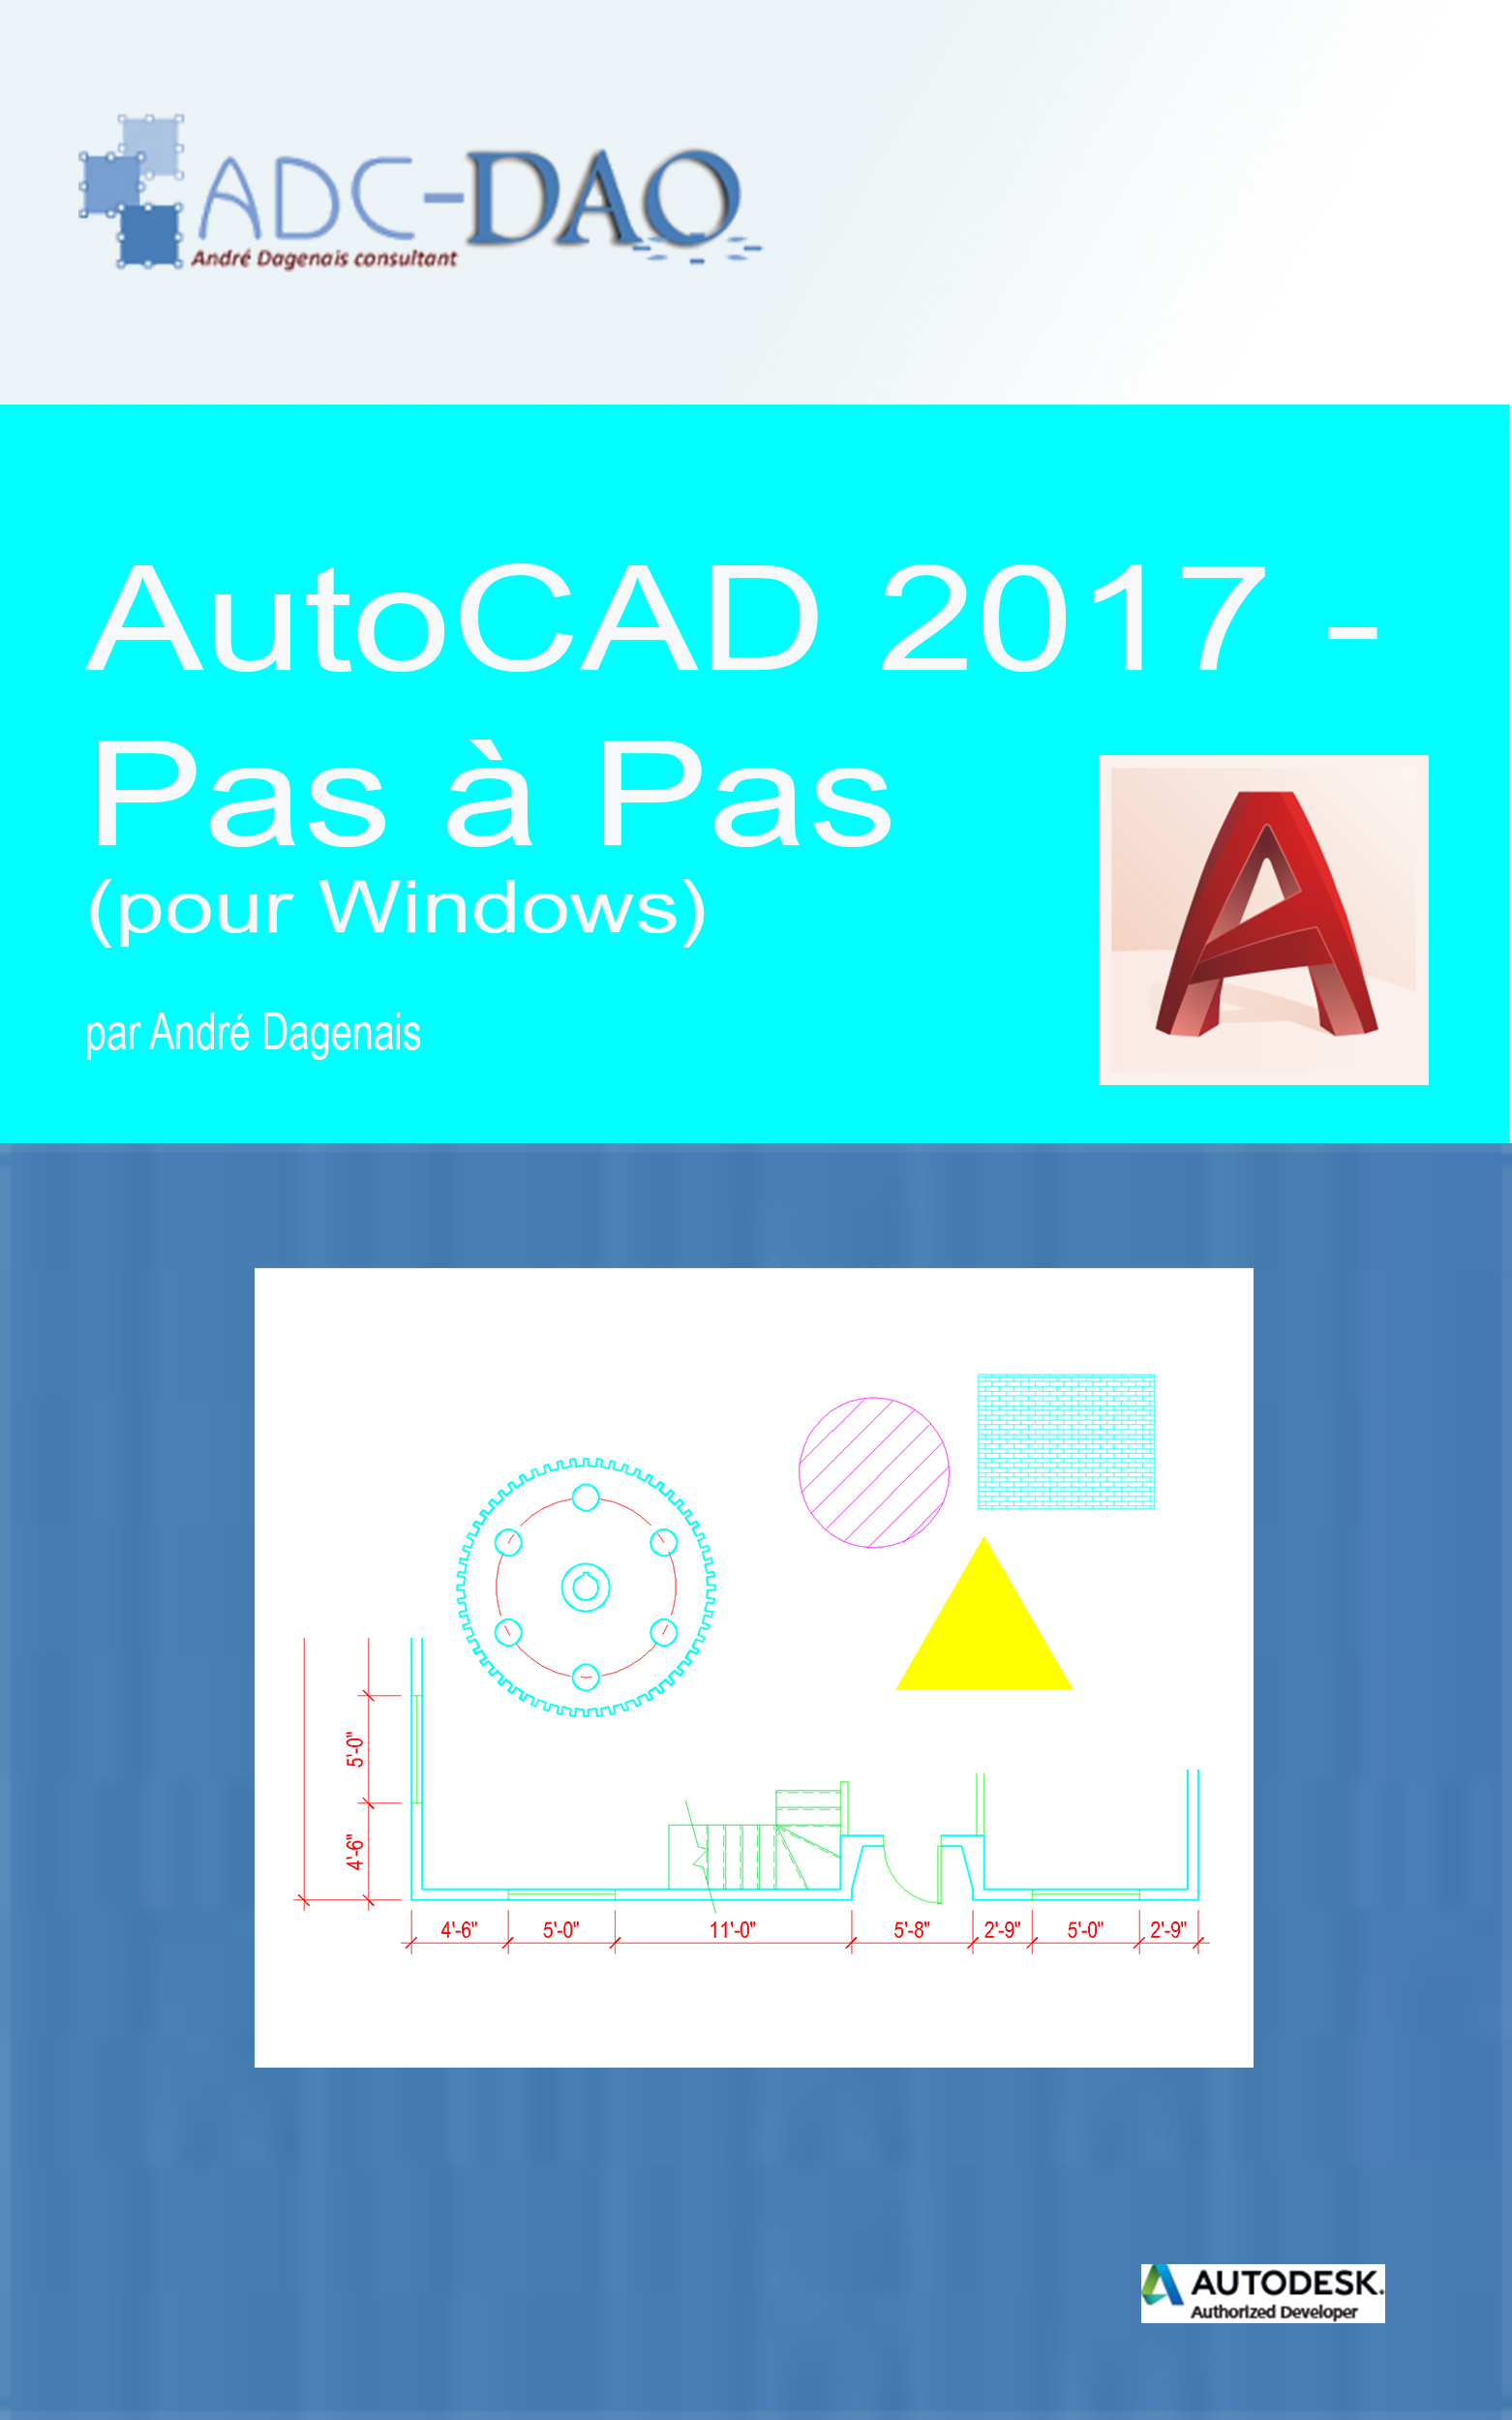 AutoCAD 2017 - Pas à pas (Couverture)